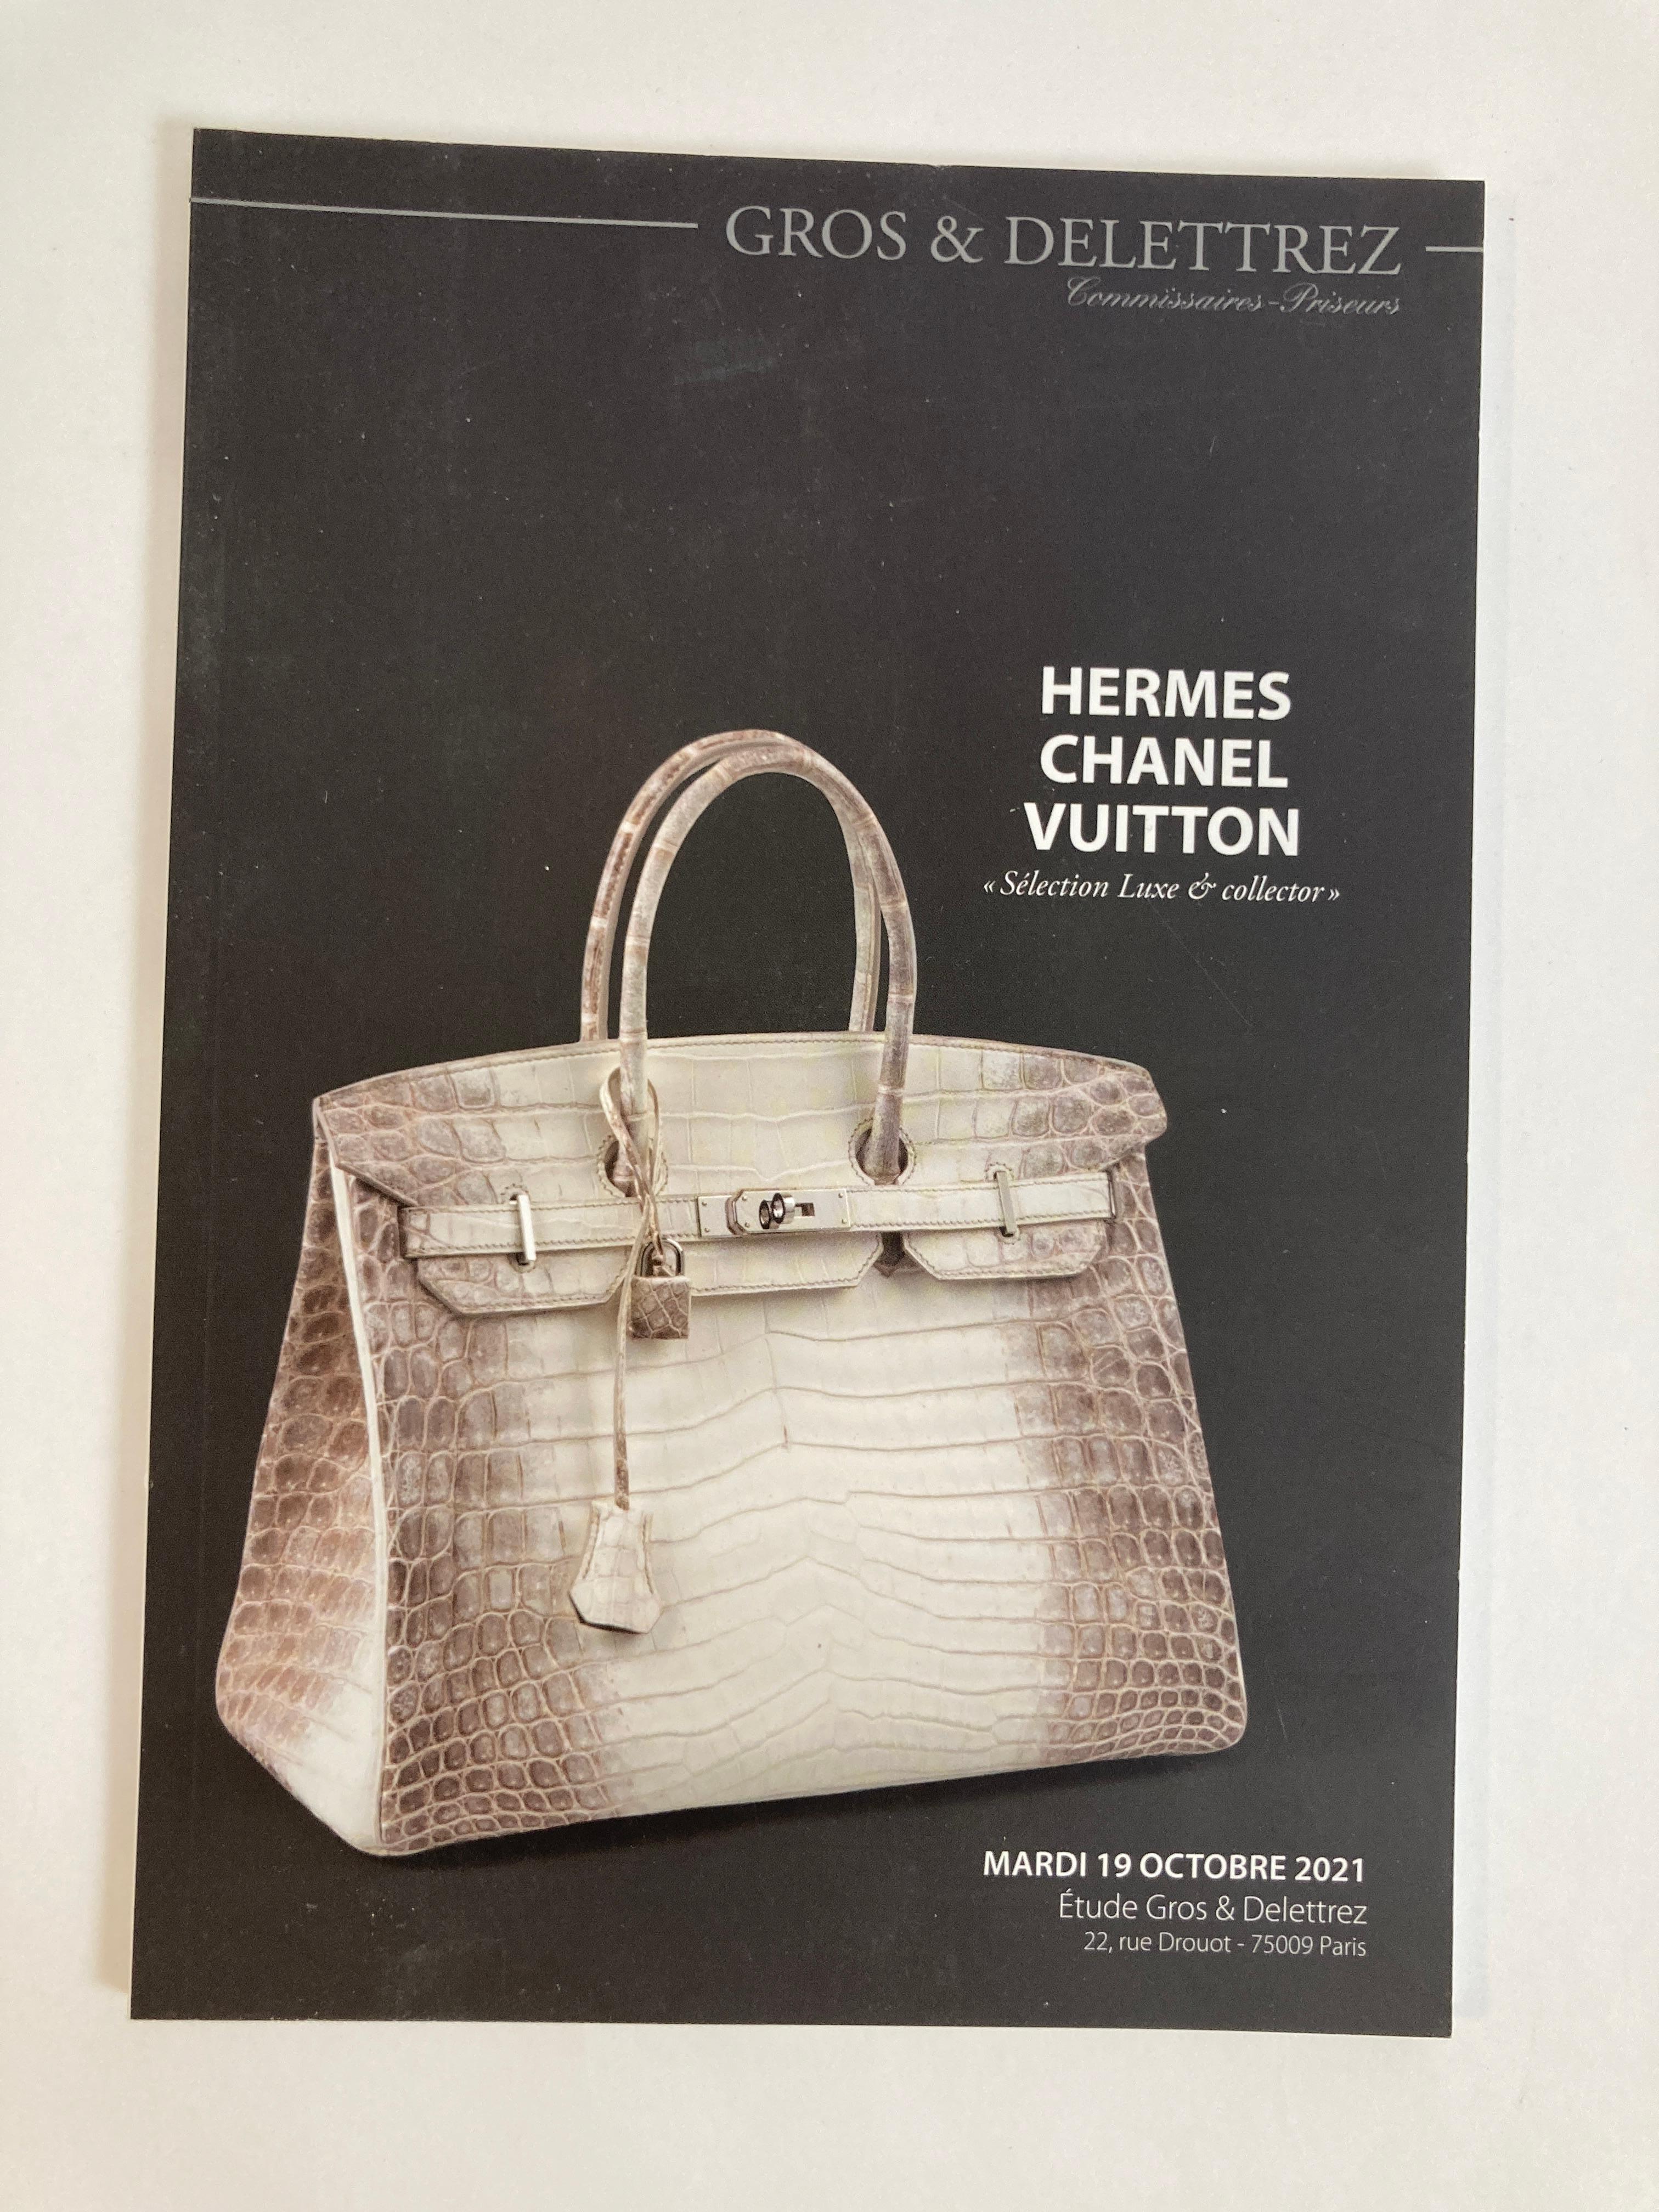 Catalogue de vente aux enchères Hermès Chanel Vuitton Selection Luxe & Collector 2021 par Gros & Delettrez Paris.
Catalogue de vente aux enchères de Paris 2021 publié par Gros & Delettrez,
Hermes Chanel Vuitton Selection Luxe & Collector Catalogue